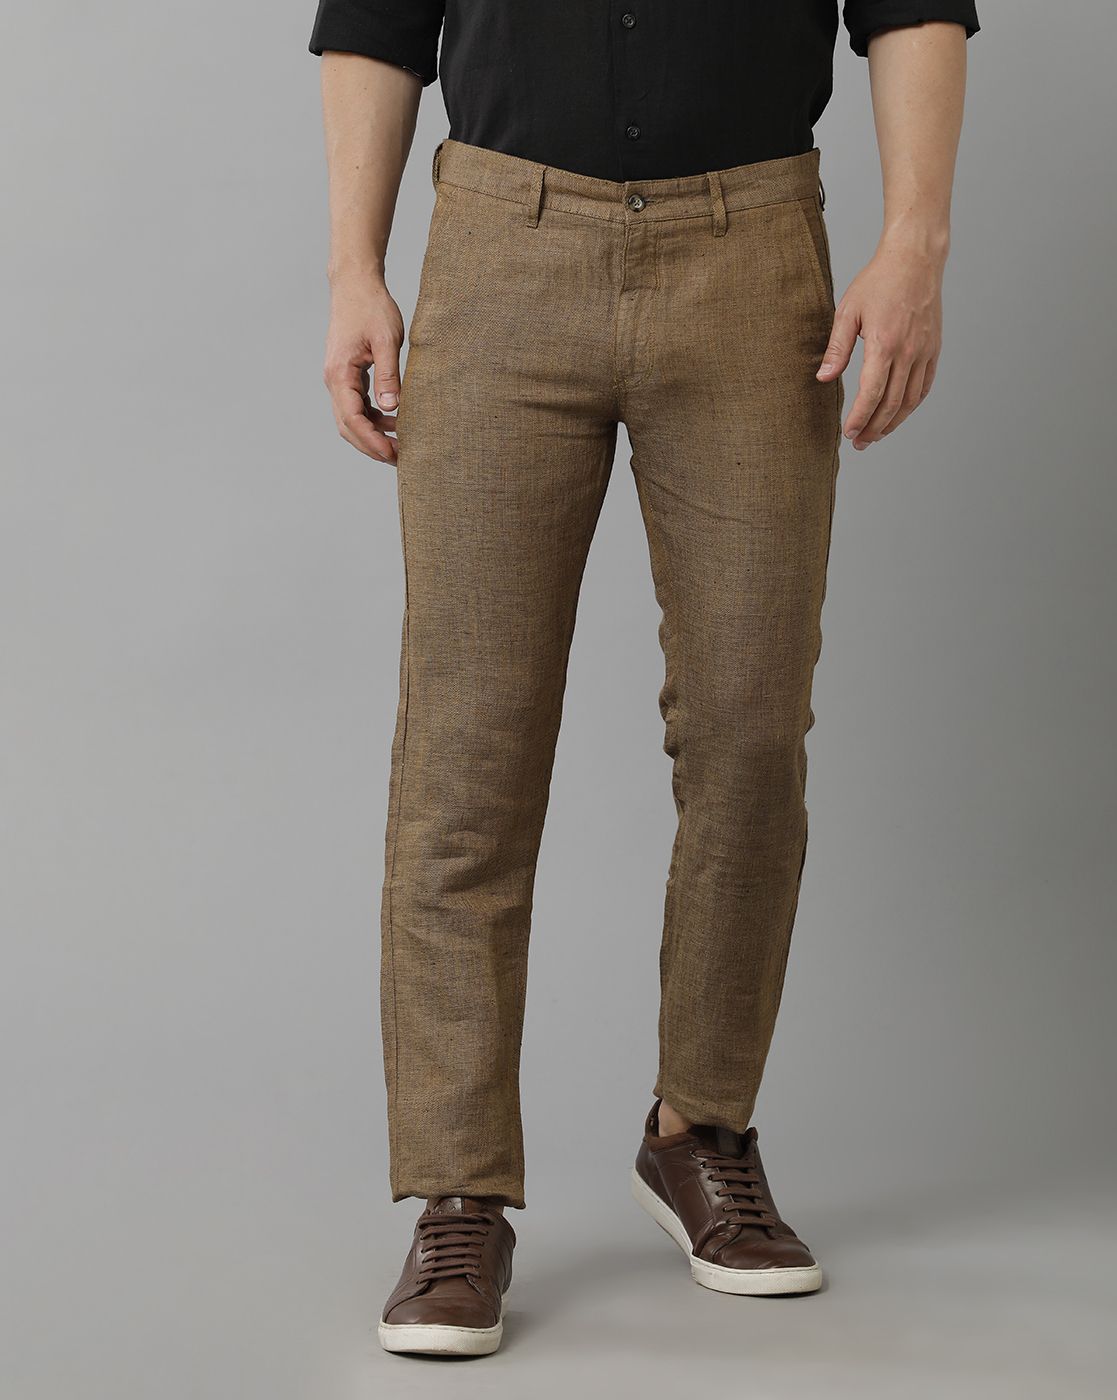 Light Grey Color Slimfit Formal Pant for Gents - Comfortable, Soft Feel  Formal Trouser for Men - Formal